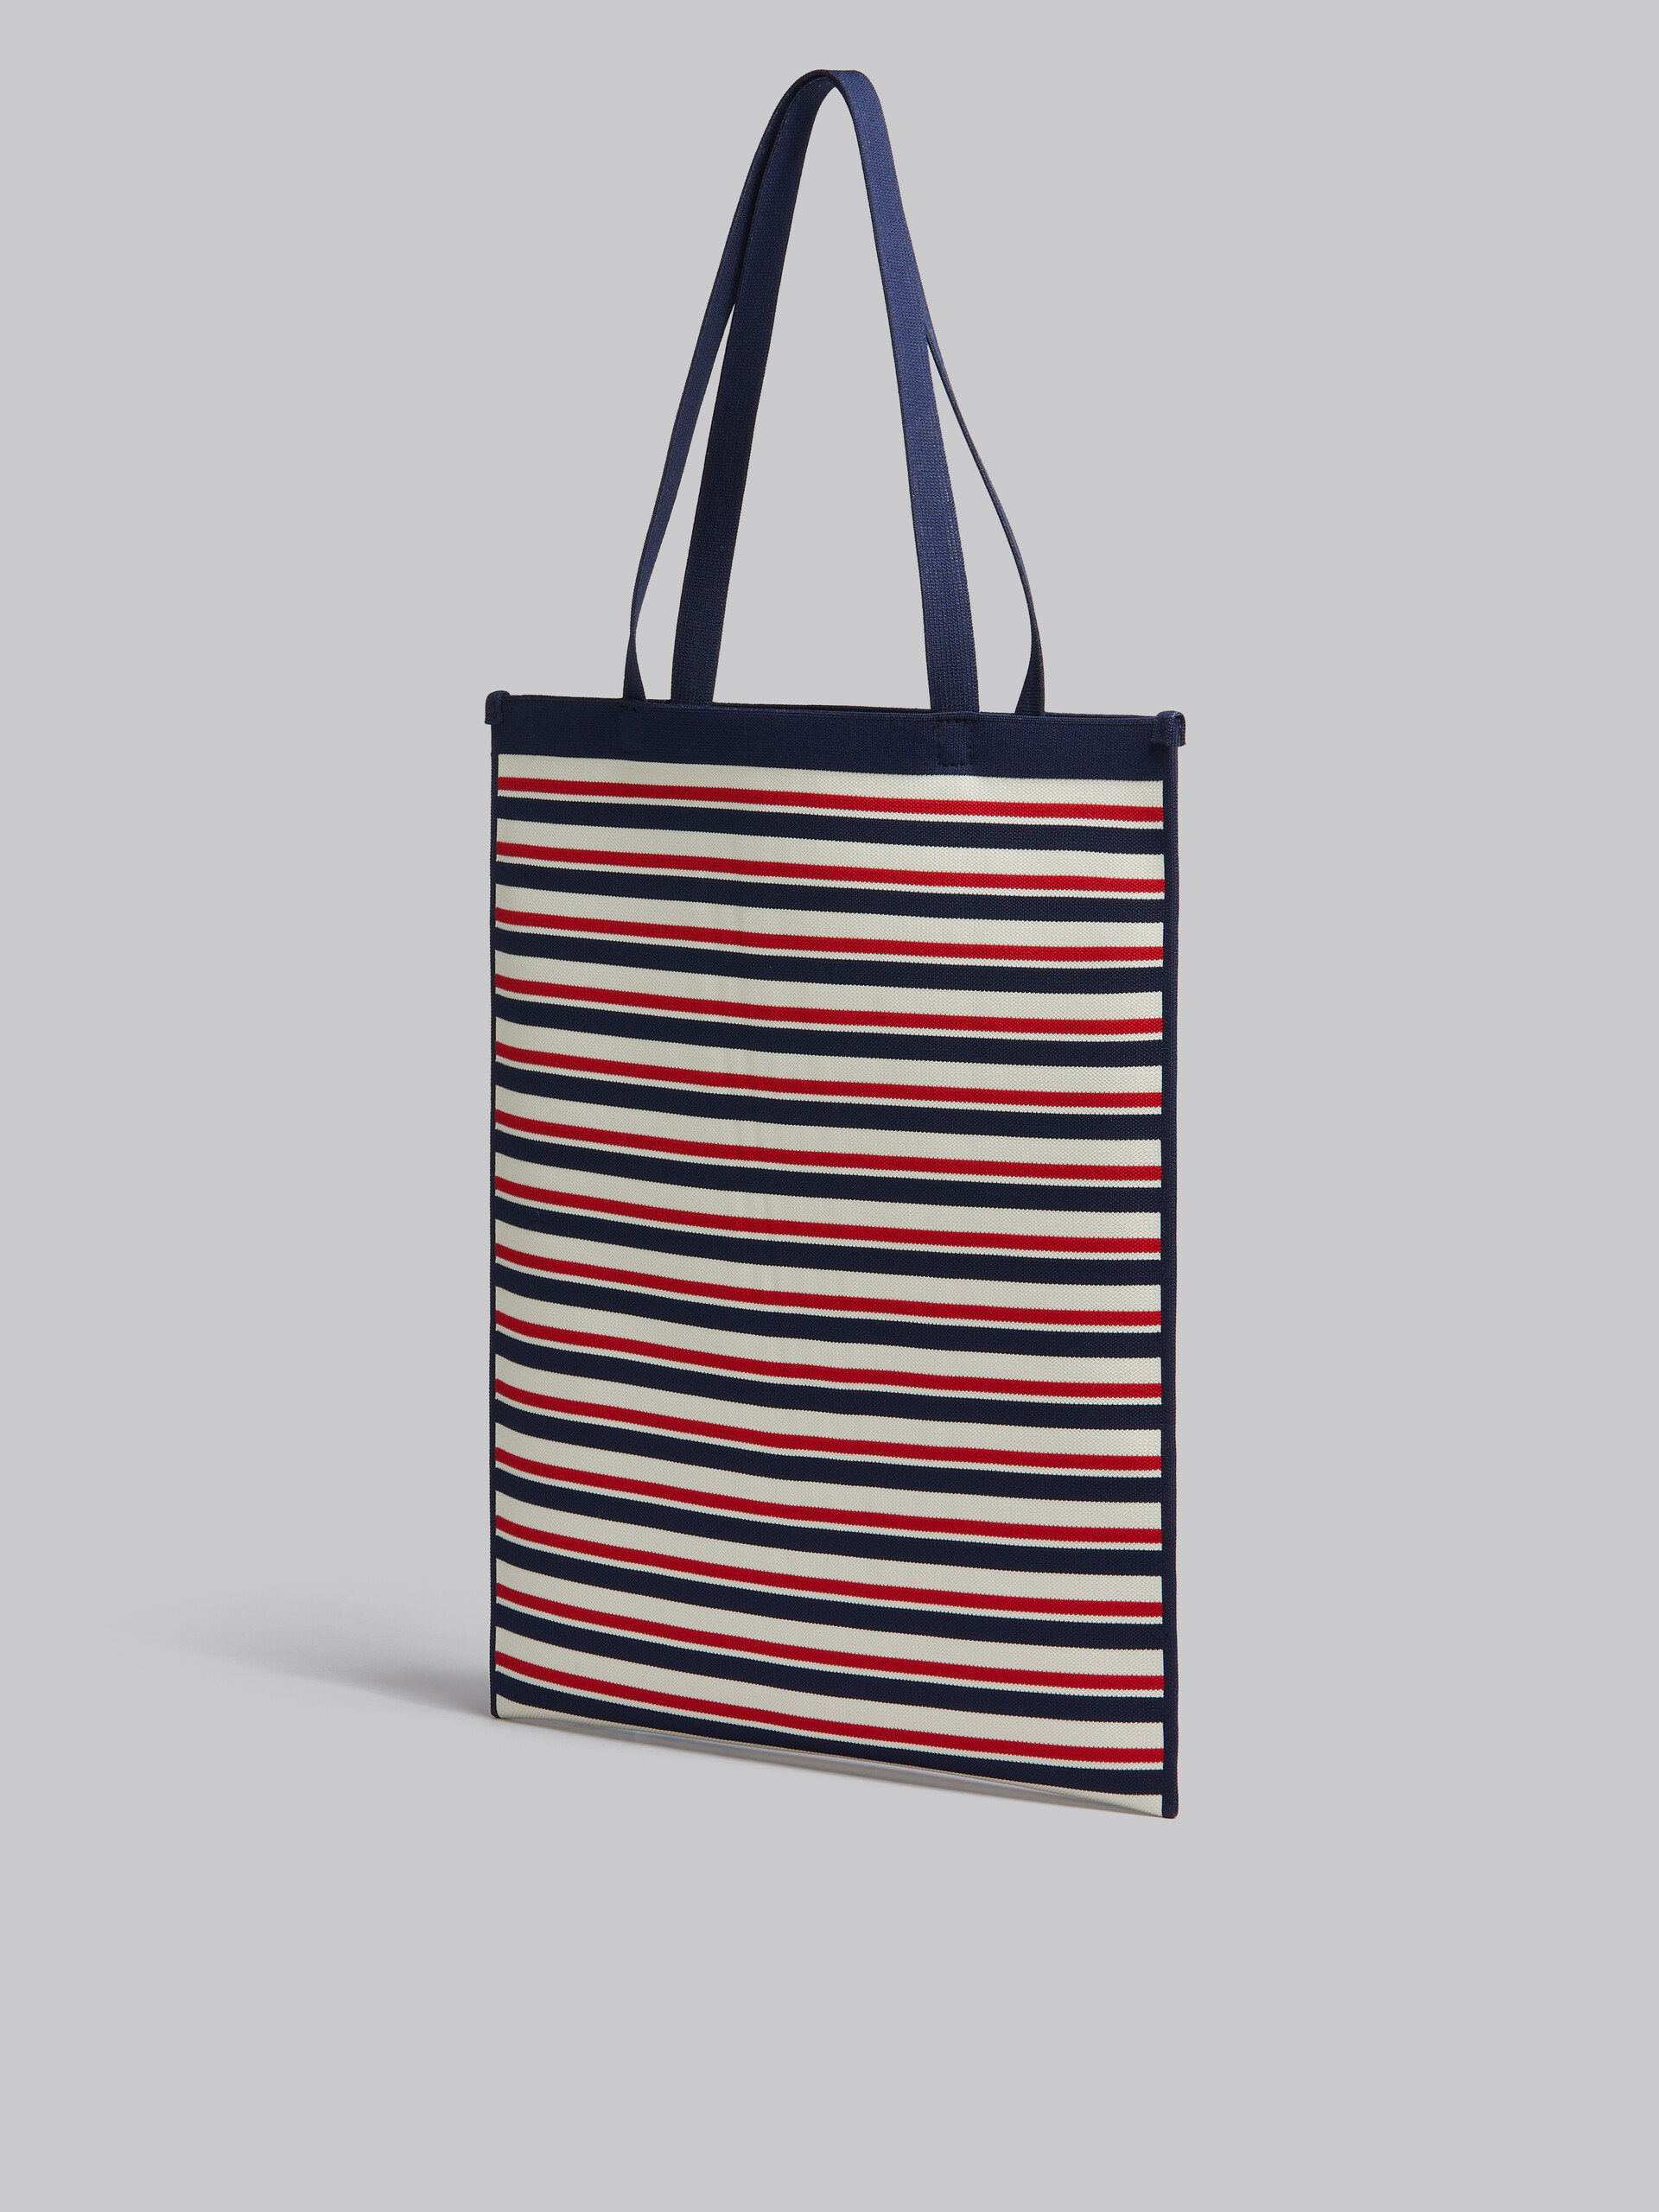 Flache Tote Bag aus Jacquard mit Streifen in Marineblau, Weiß und Rot - Shopper - Image 3